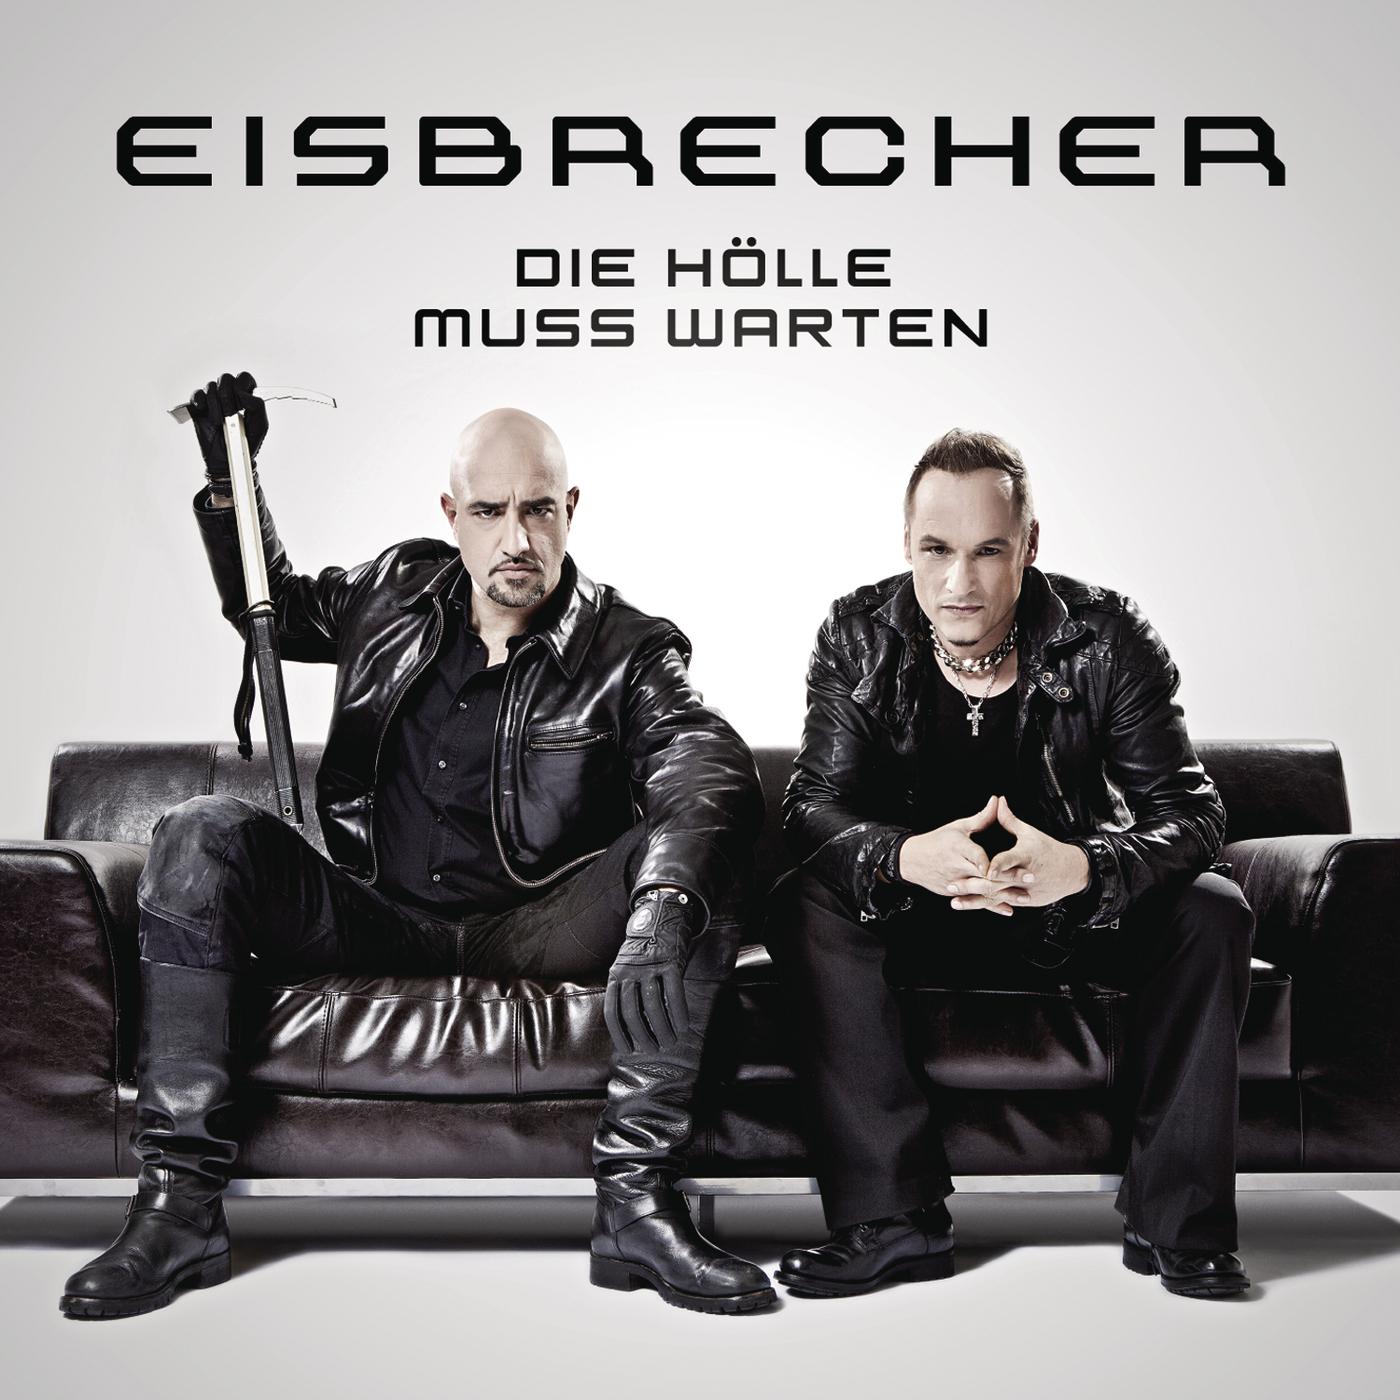 Eisbrecher rot wie liebe. Группа Eisbrecher. Солист группы Eisbrecher. Обложки группы Eisbrecher. Eisbrecher барабанщик.